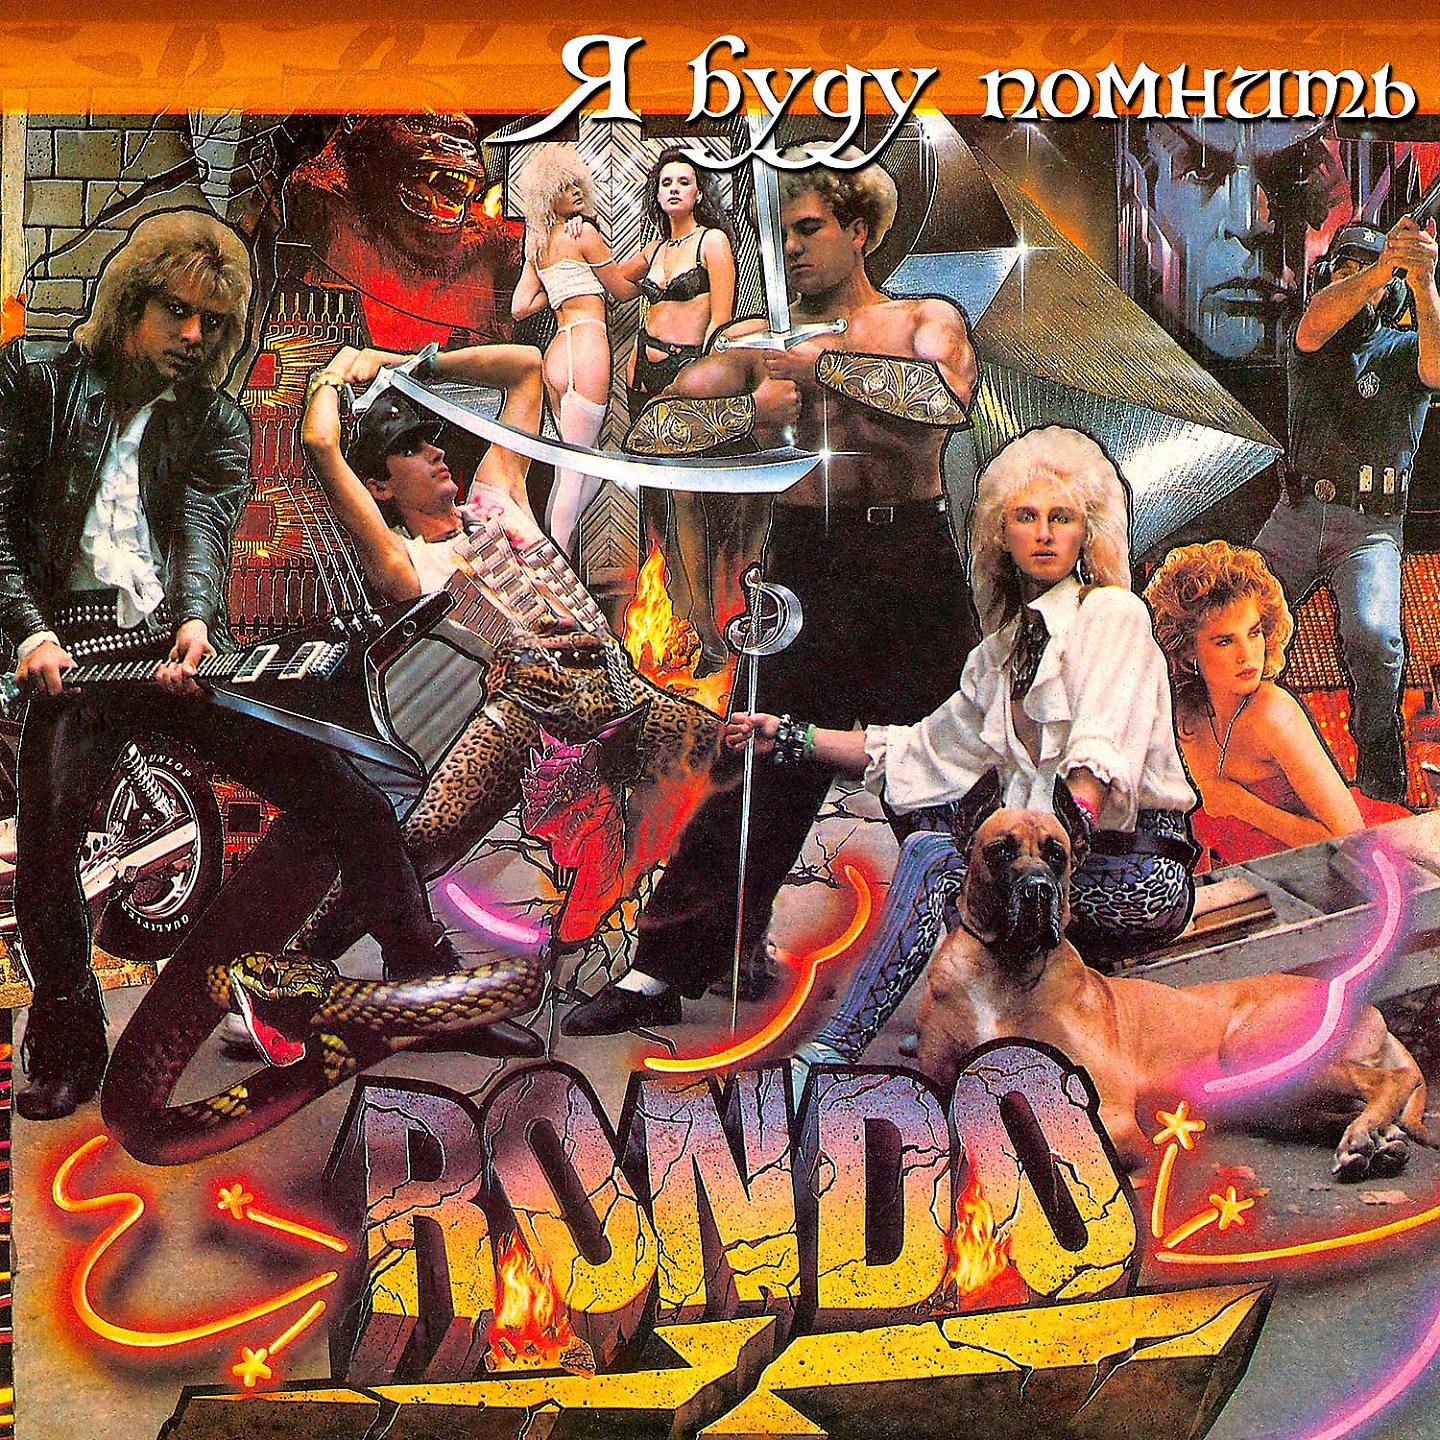 Я буду помнить группа. Группа Рондо пластинка. Группа Рондо 1988. Рондо блюститель порядка 1988. Группа Рондо 1984-турнепс.